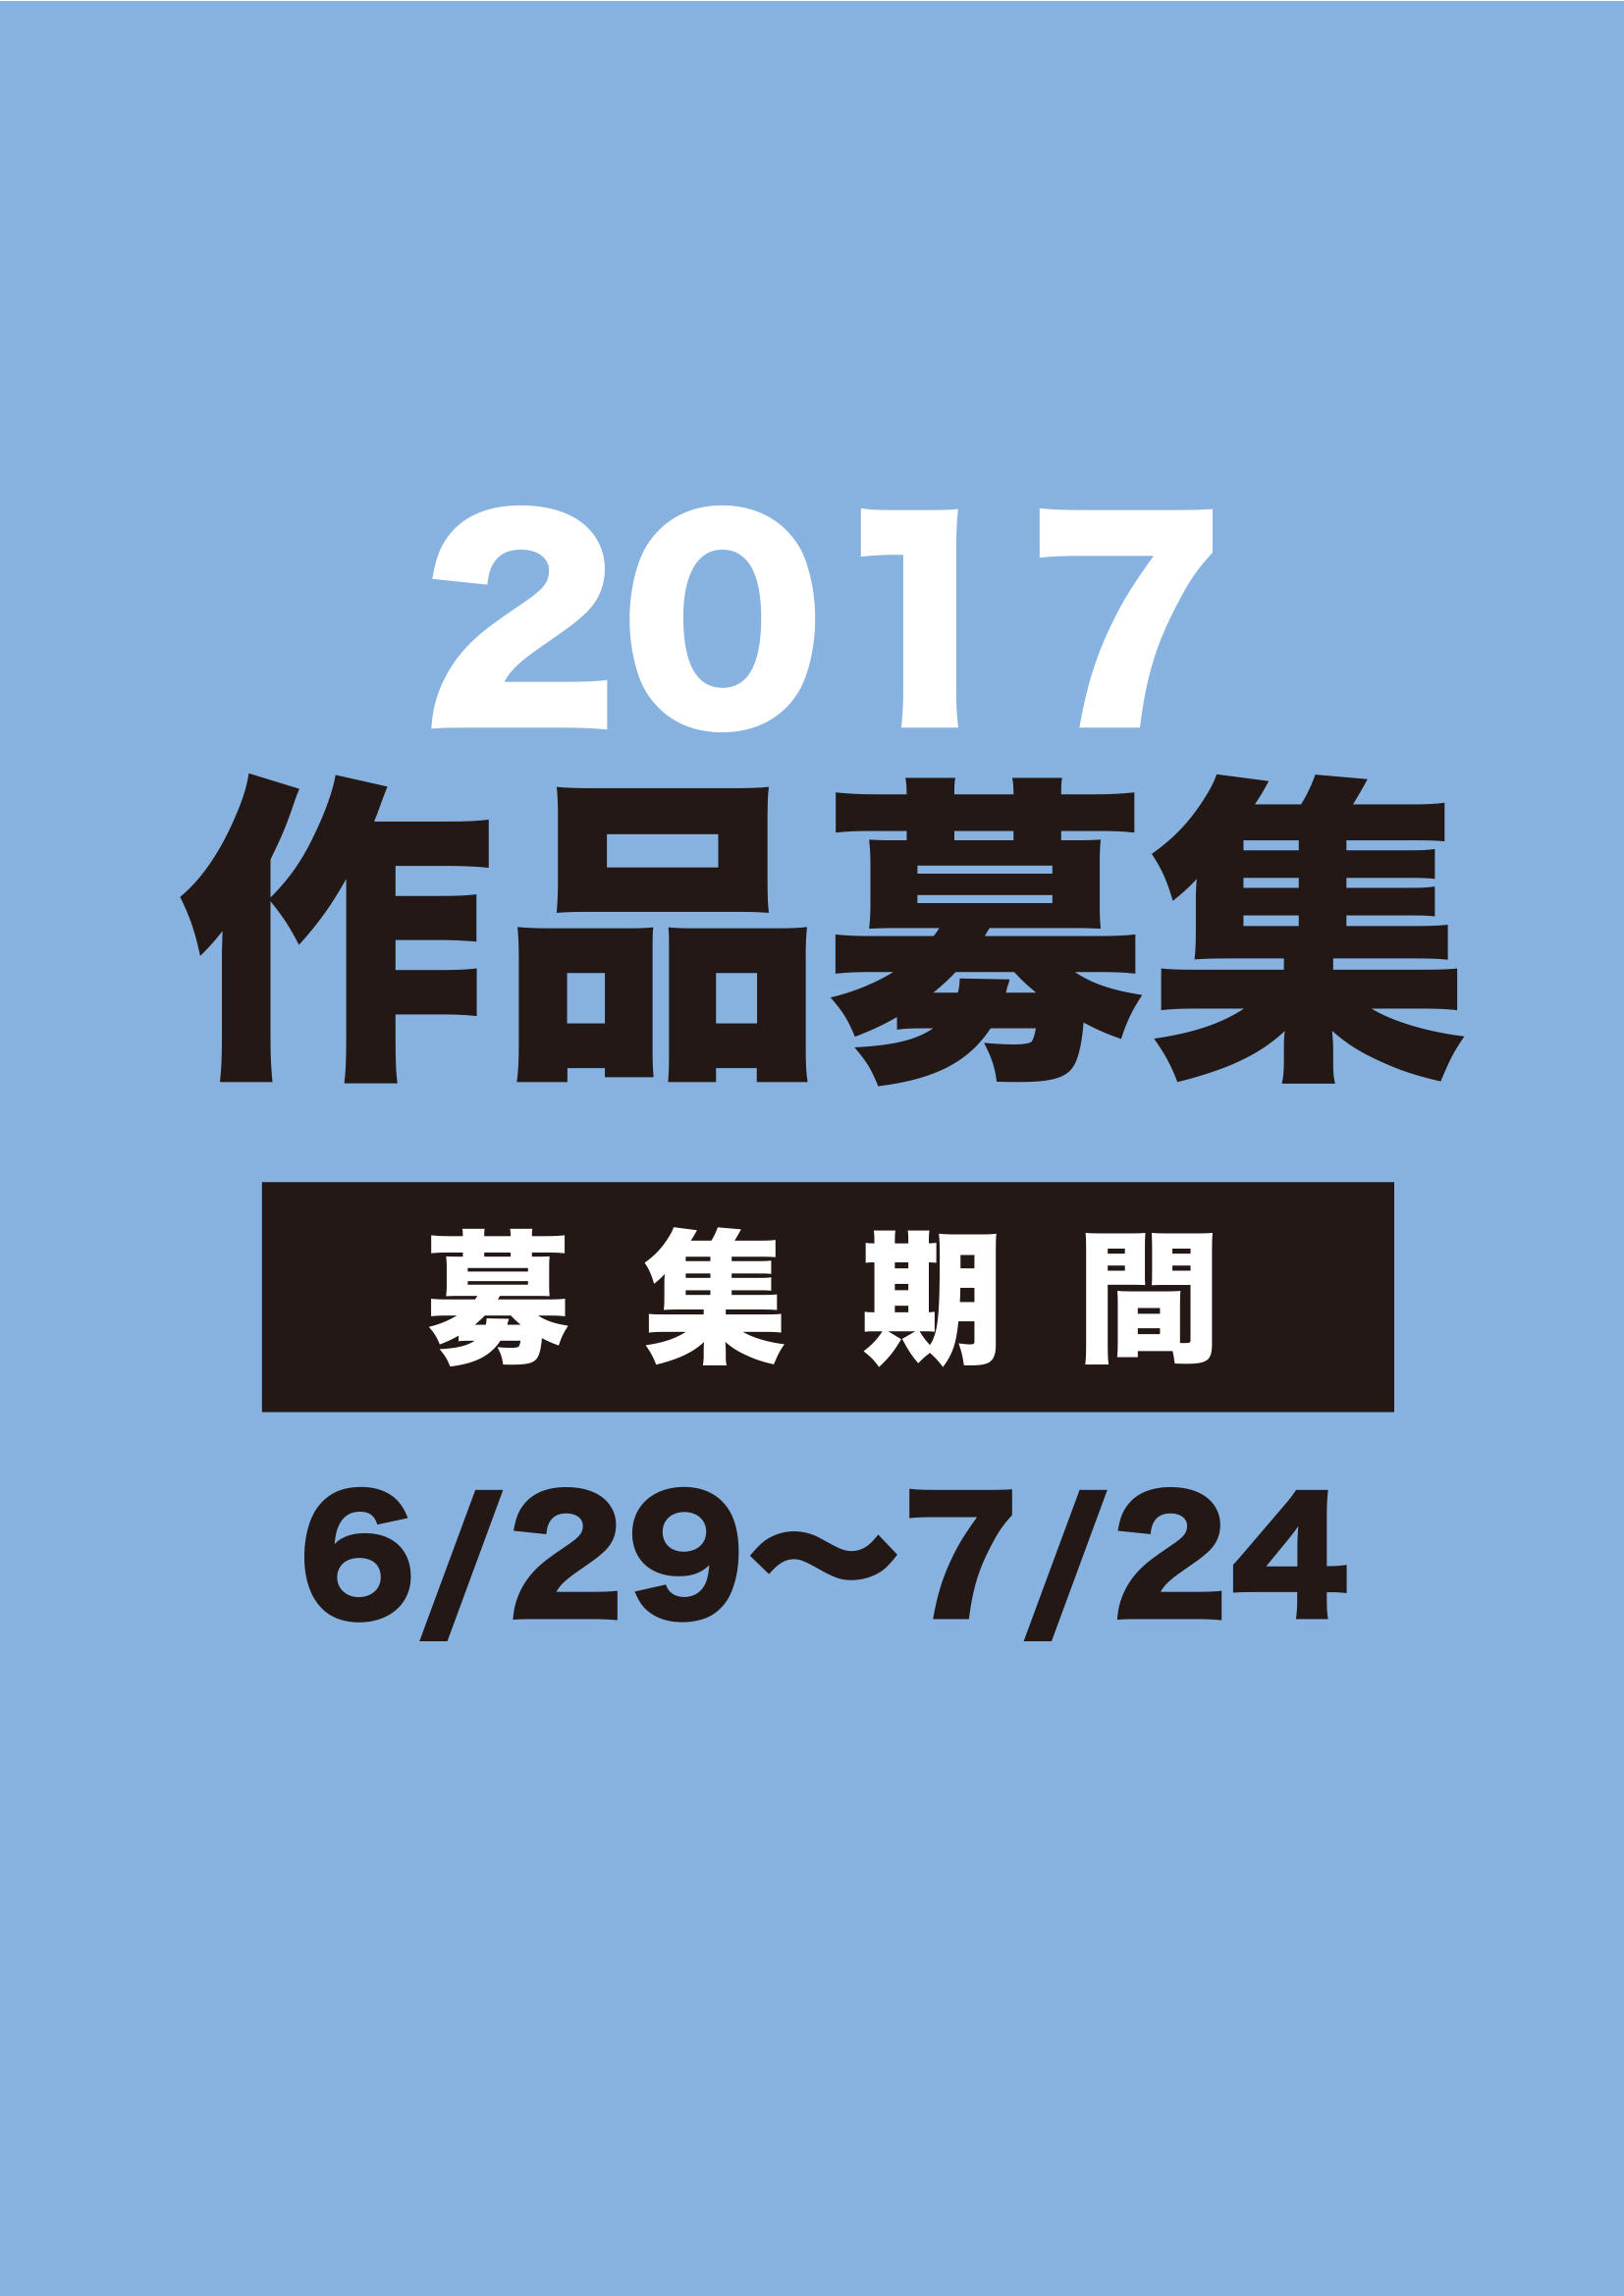 2017コンテンツアワード募集.jpg